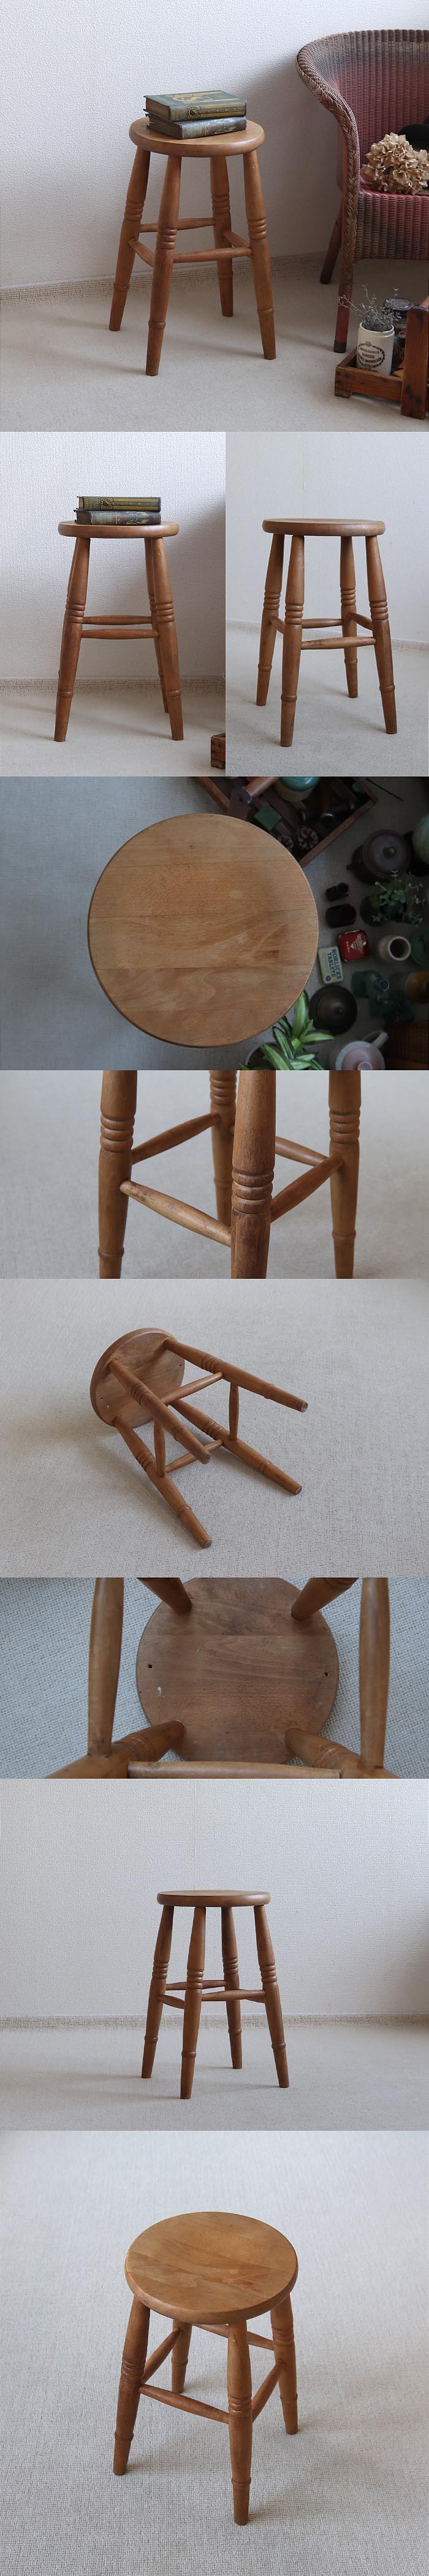 イギリス ヴィンテージ スツール 無垢材 丸椅子 アンティーク 